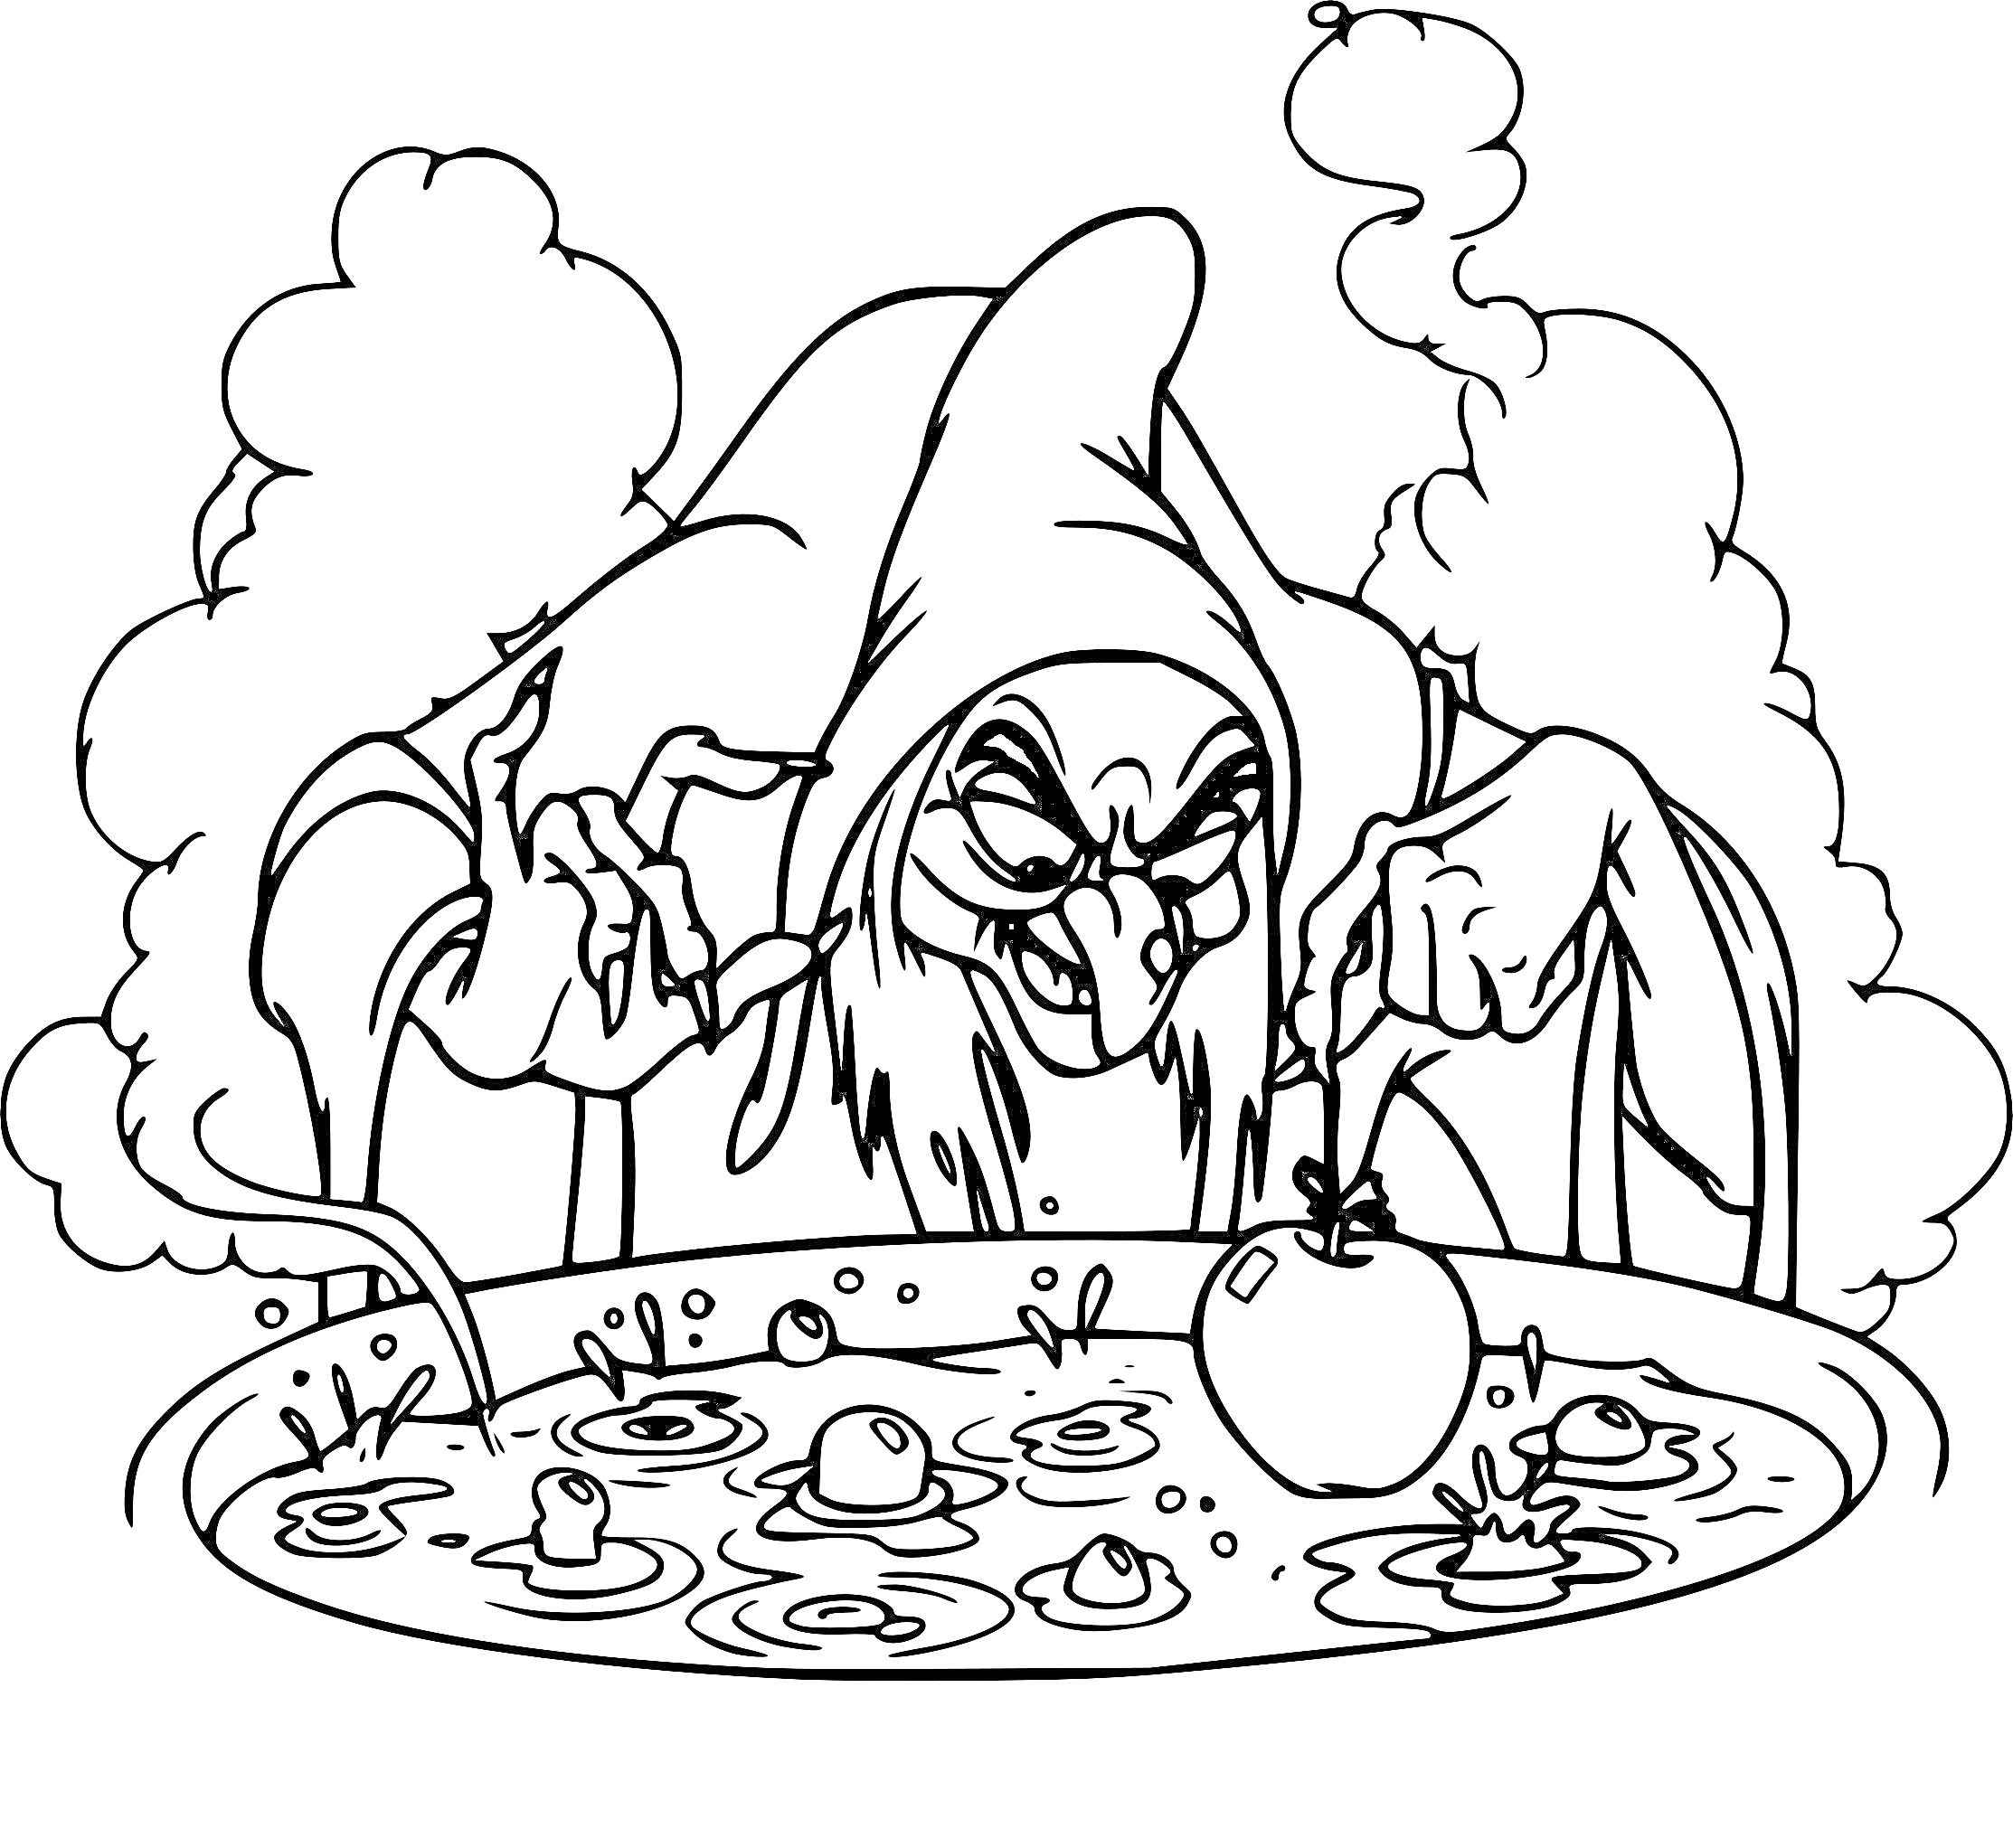 Ведьма с капюшоном варит зелье с яблоком в котле